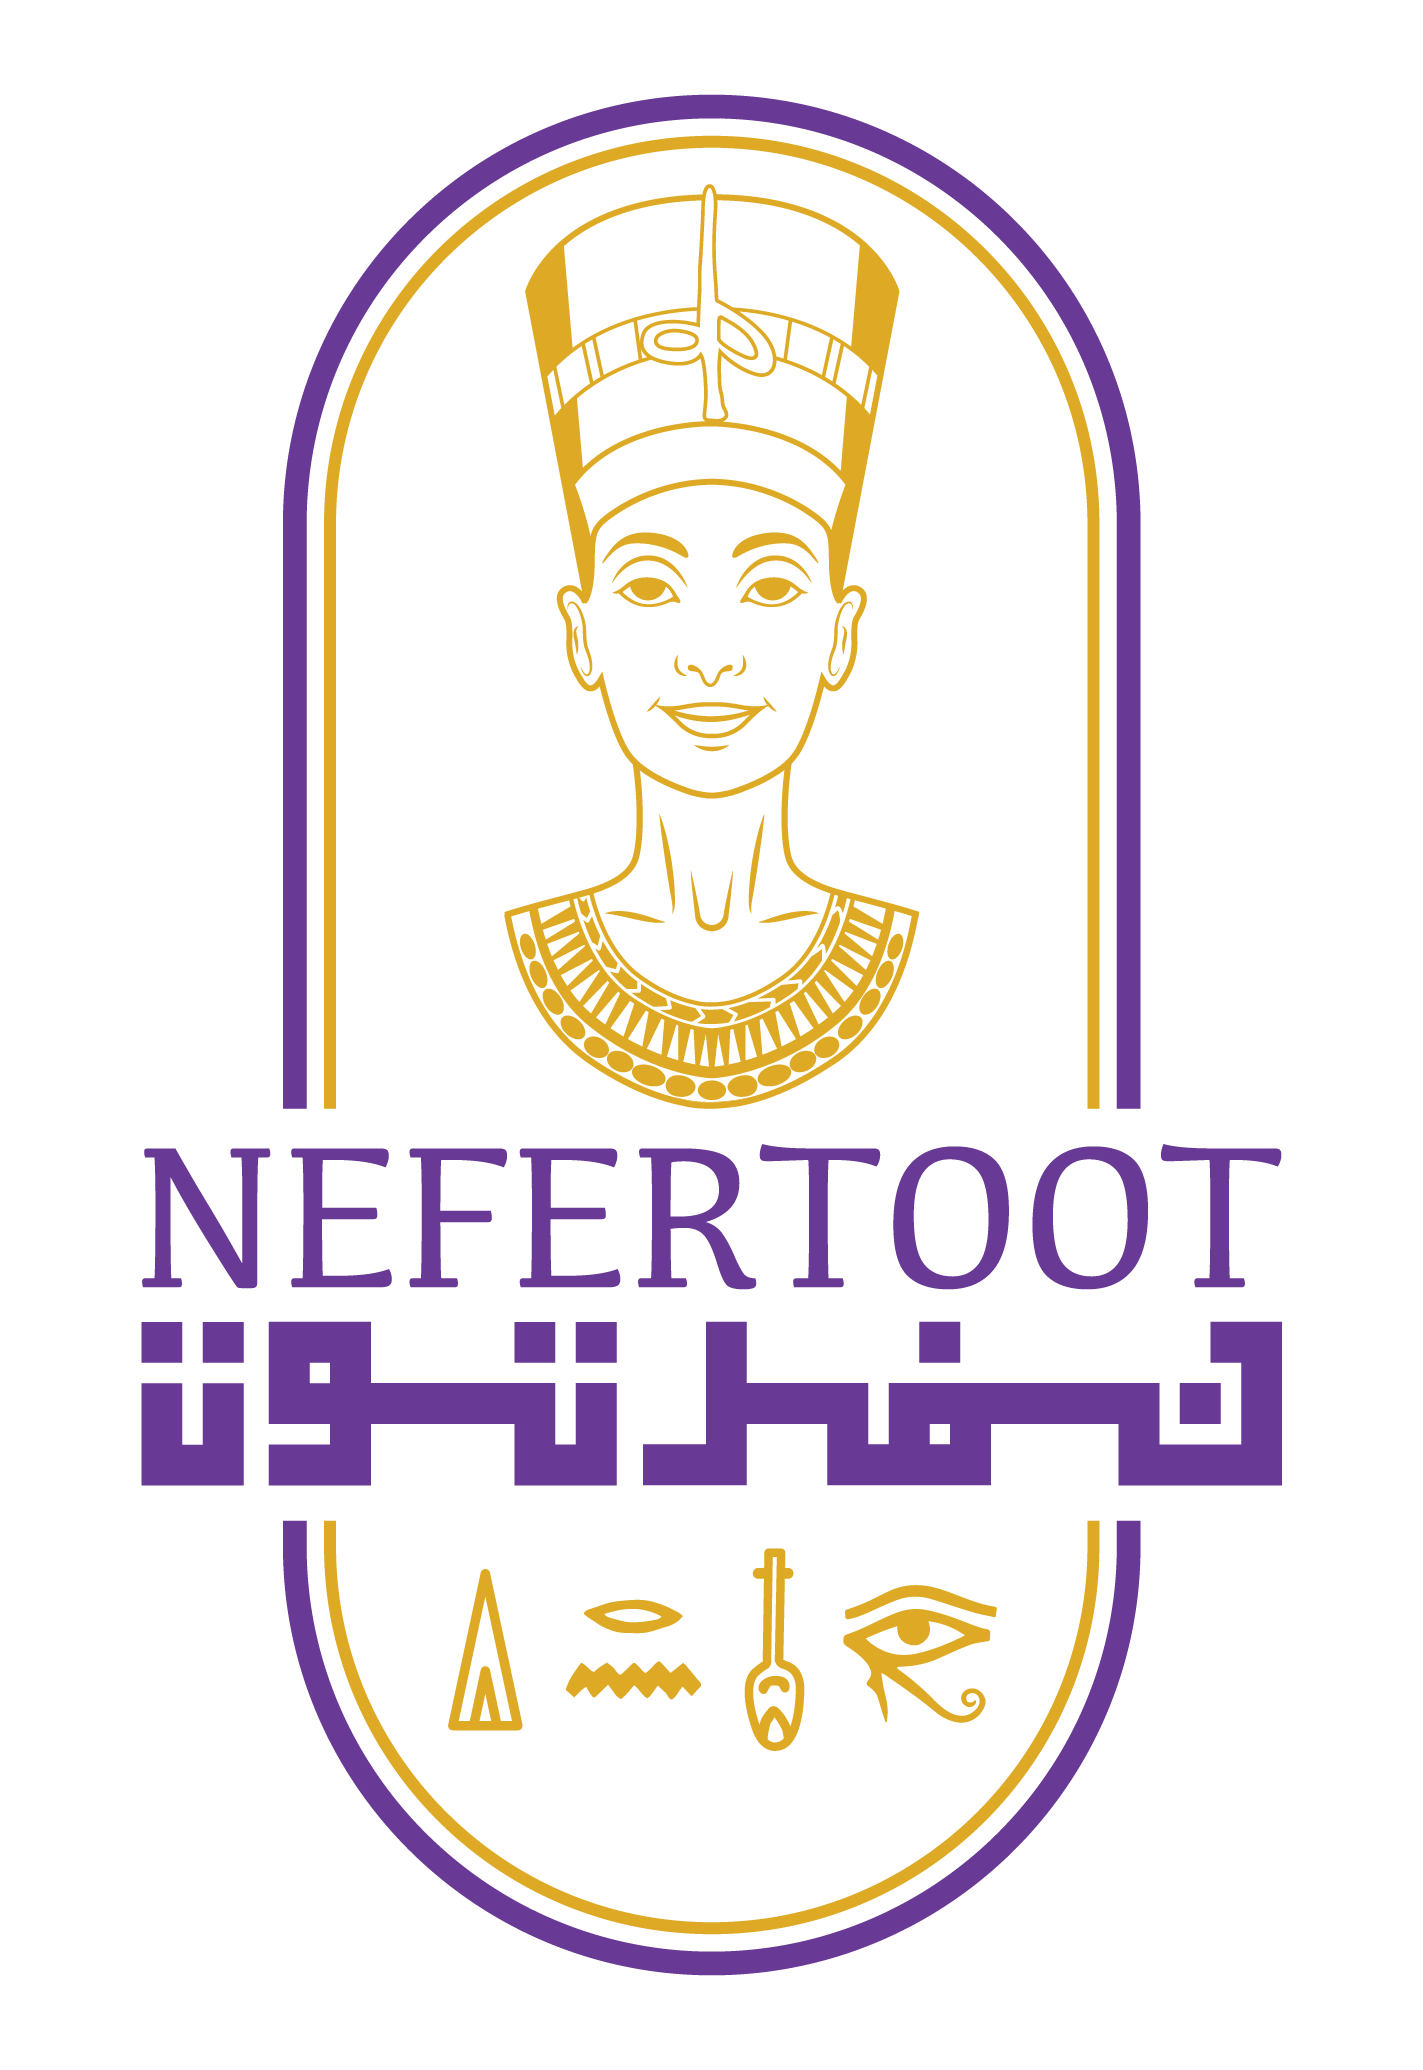 Nefertoot Egypt